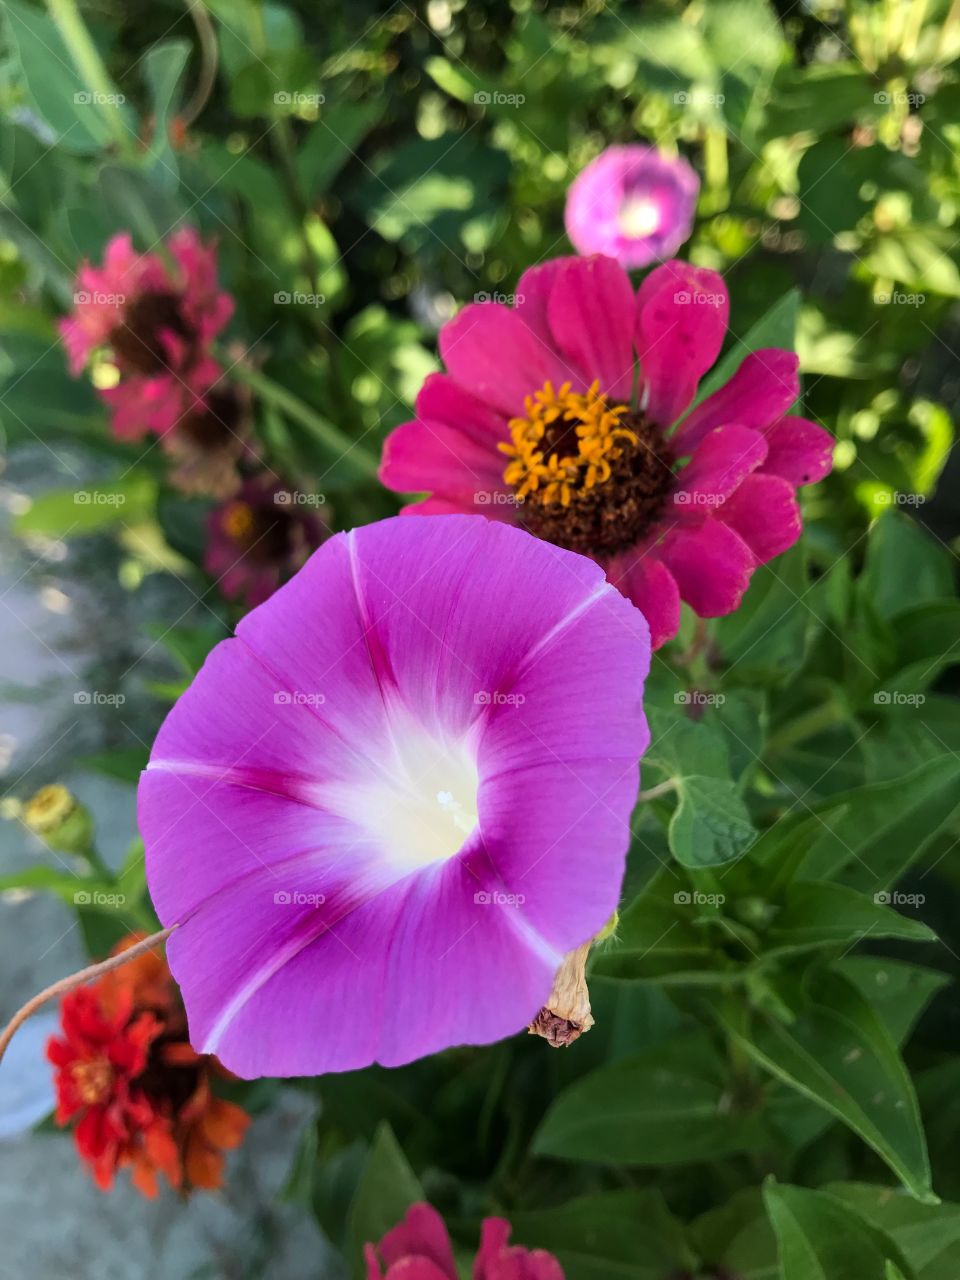 beautiful flowers in garden